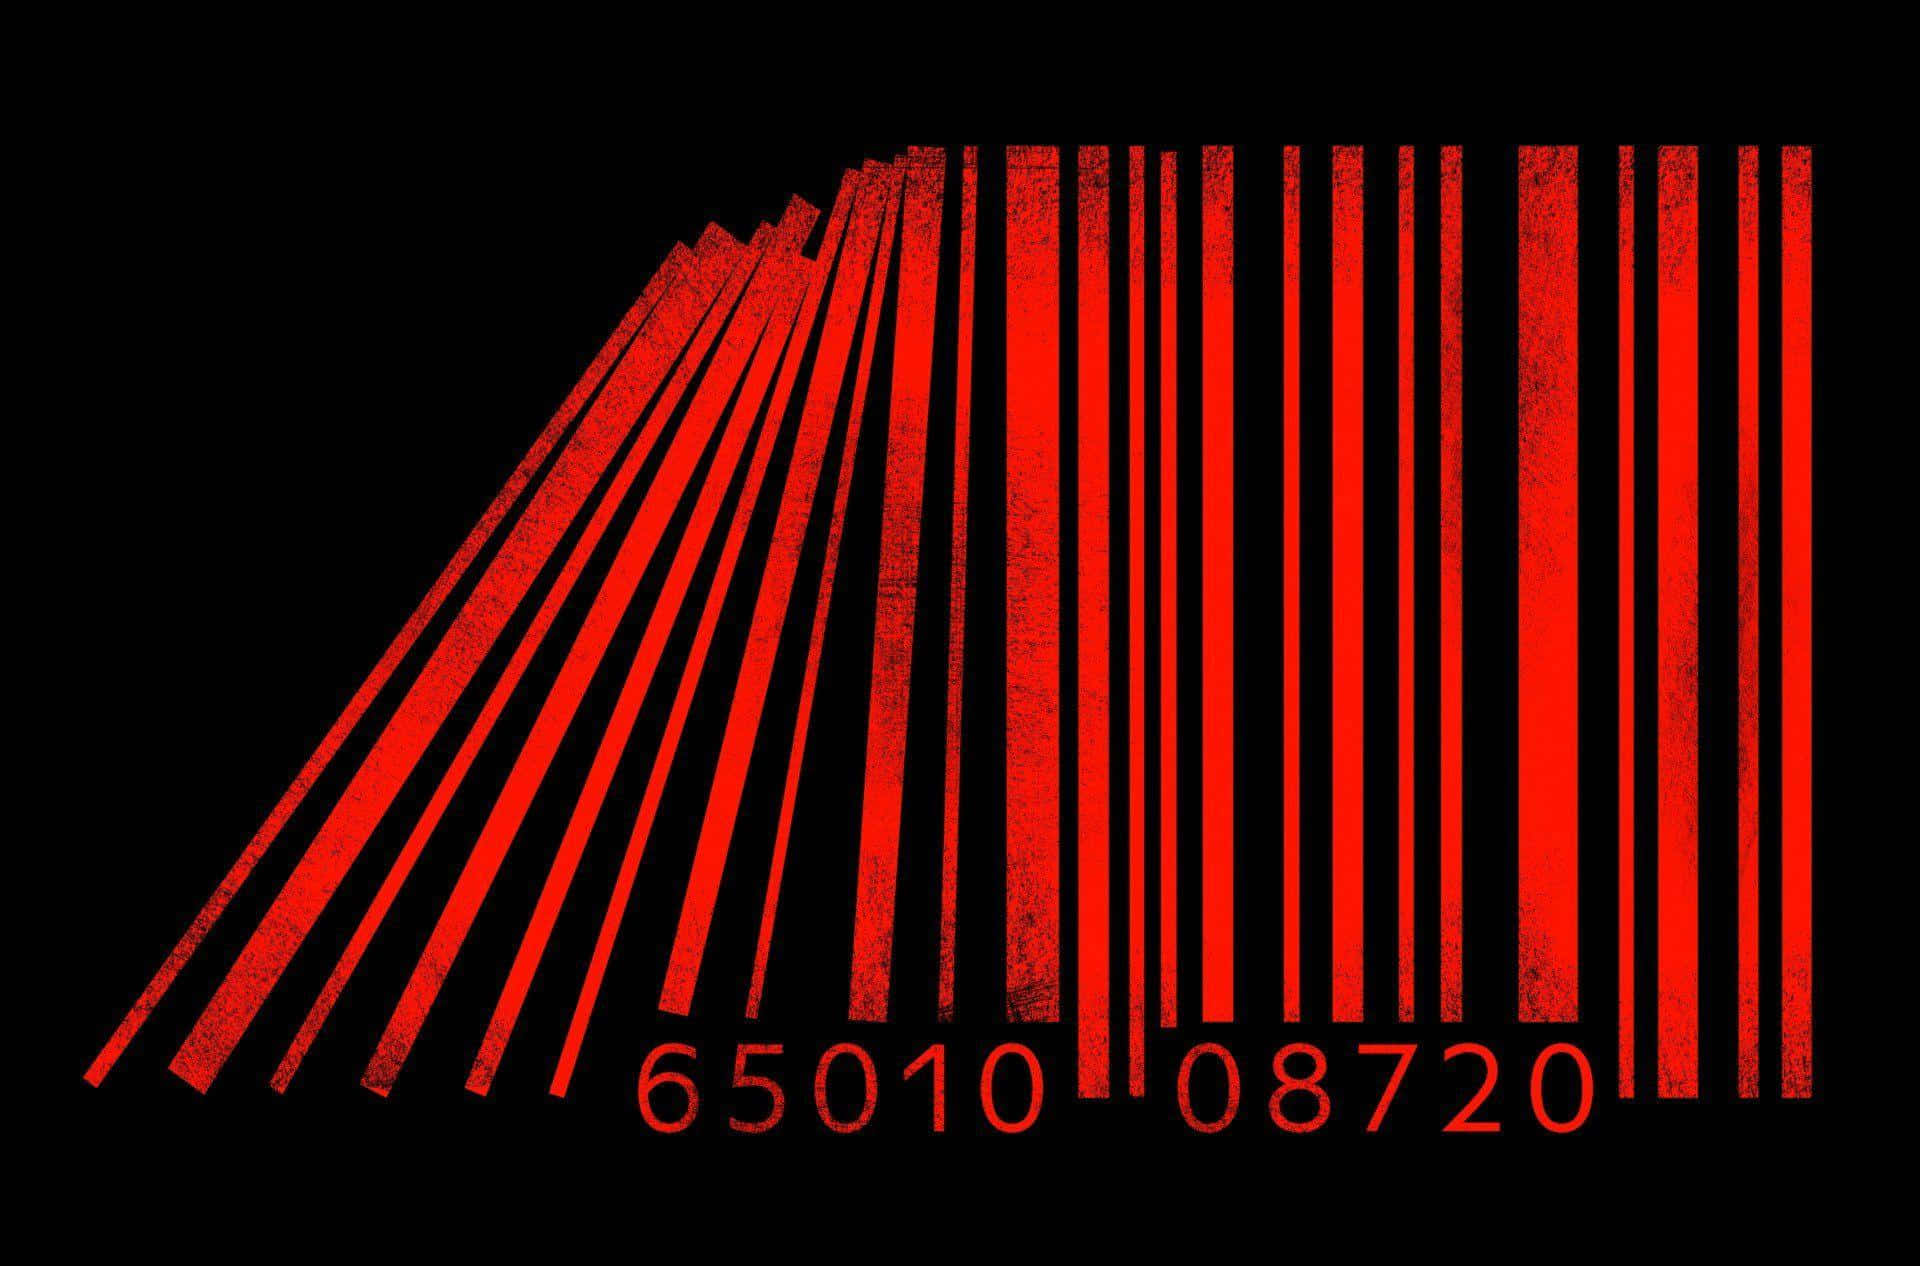 Imagende Código De Barras Rojo En La Web Oscura